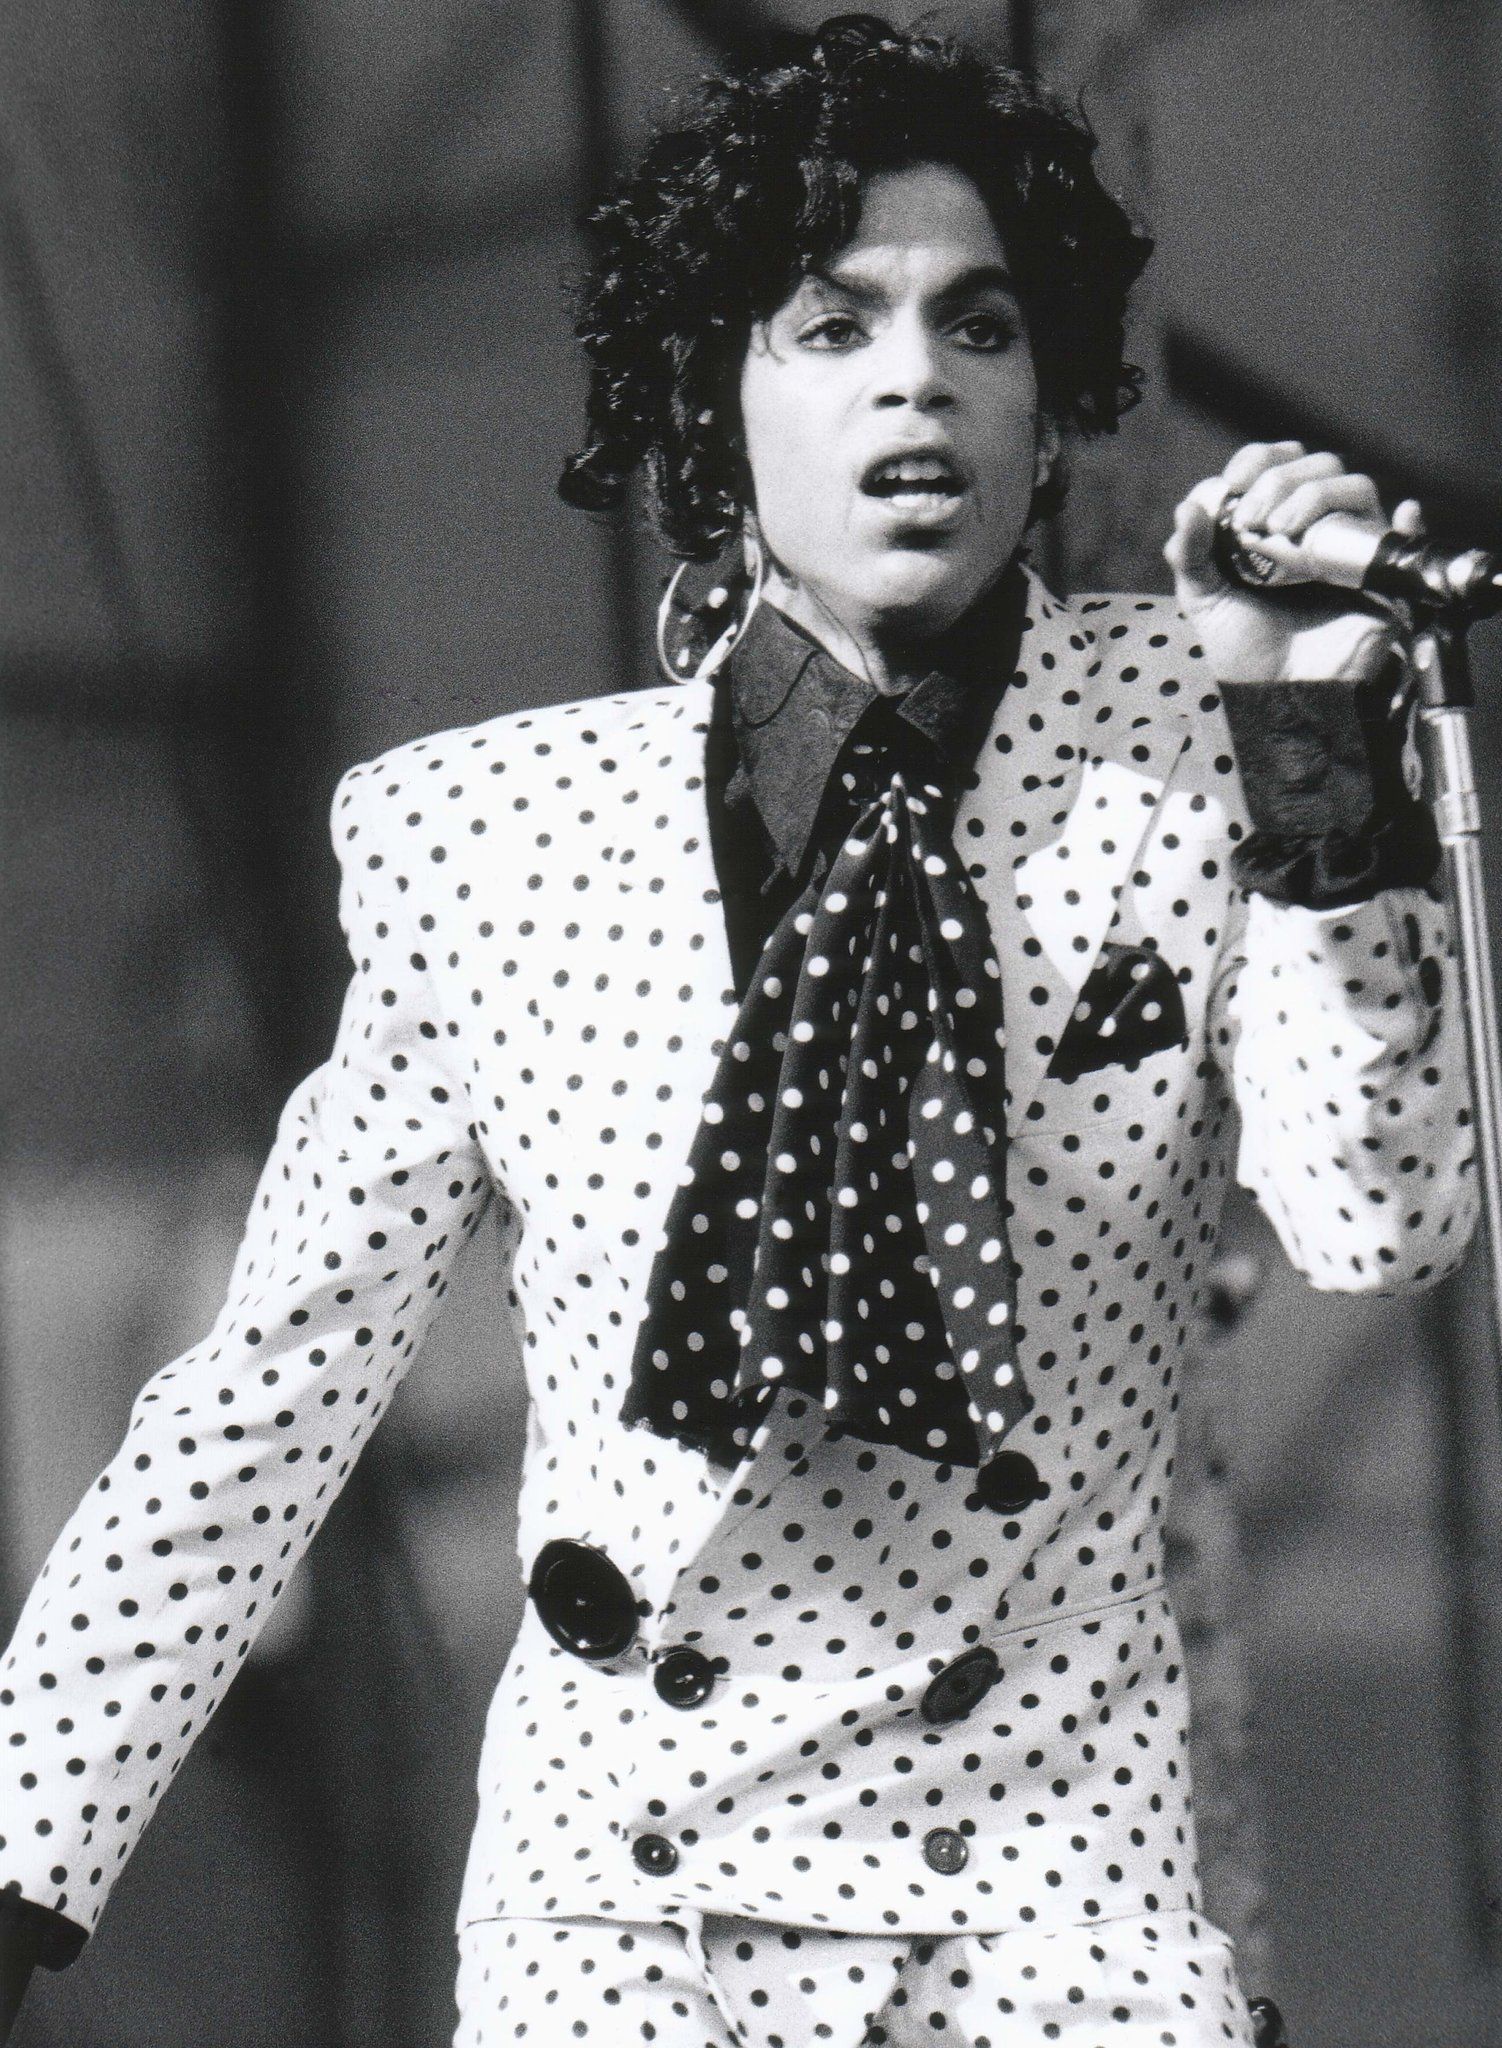 Prince. Rockstar dallo stile indimenticabile - immagine 4